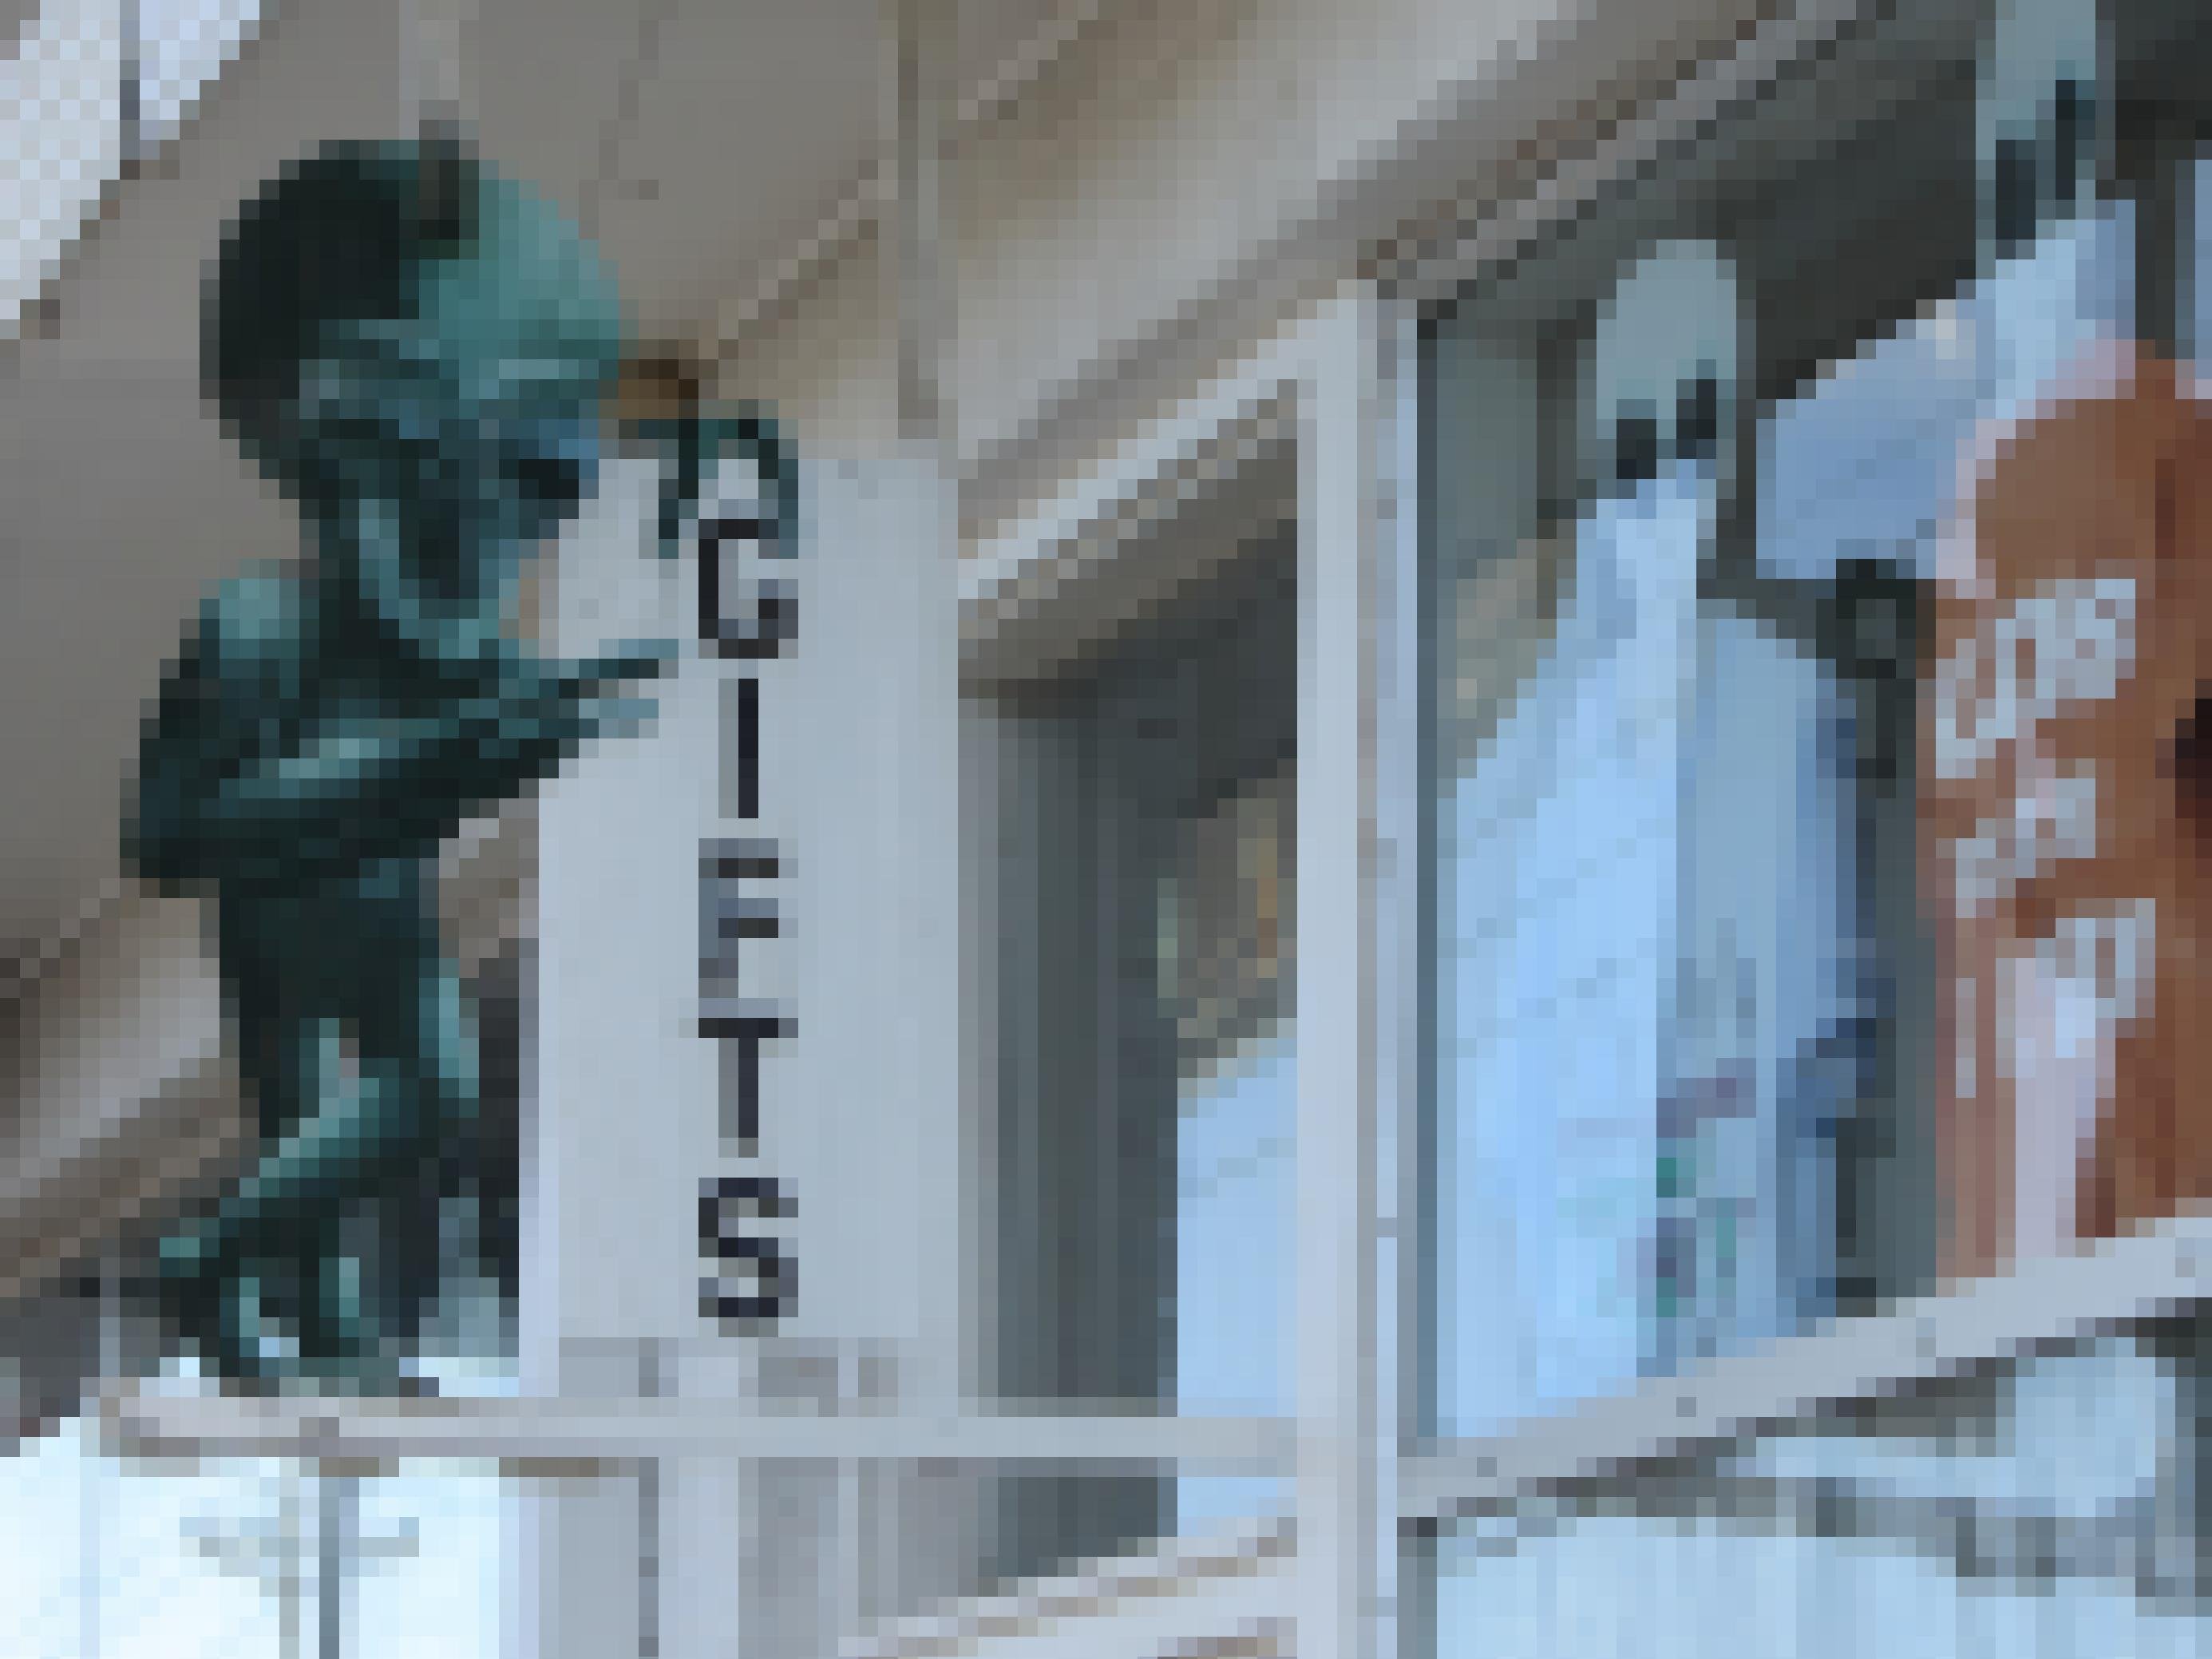 Fenster eines Souvenirshops mit Alien-Werbung.